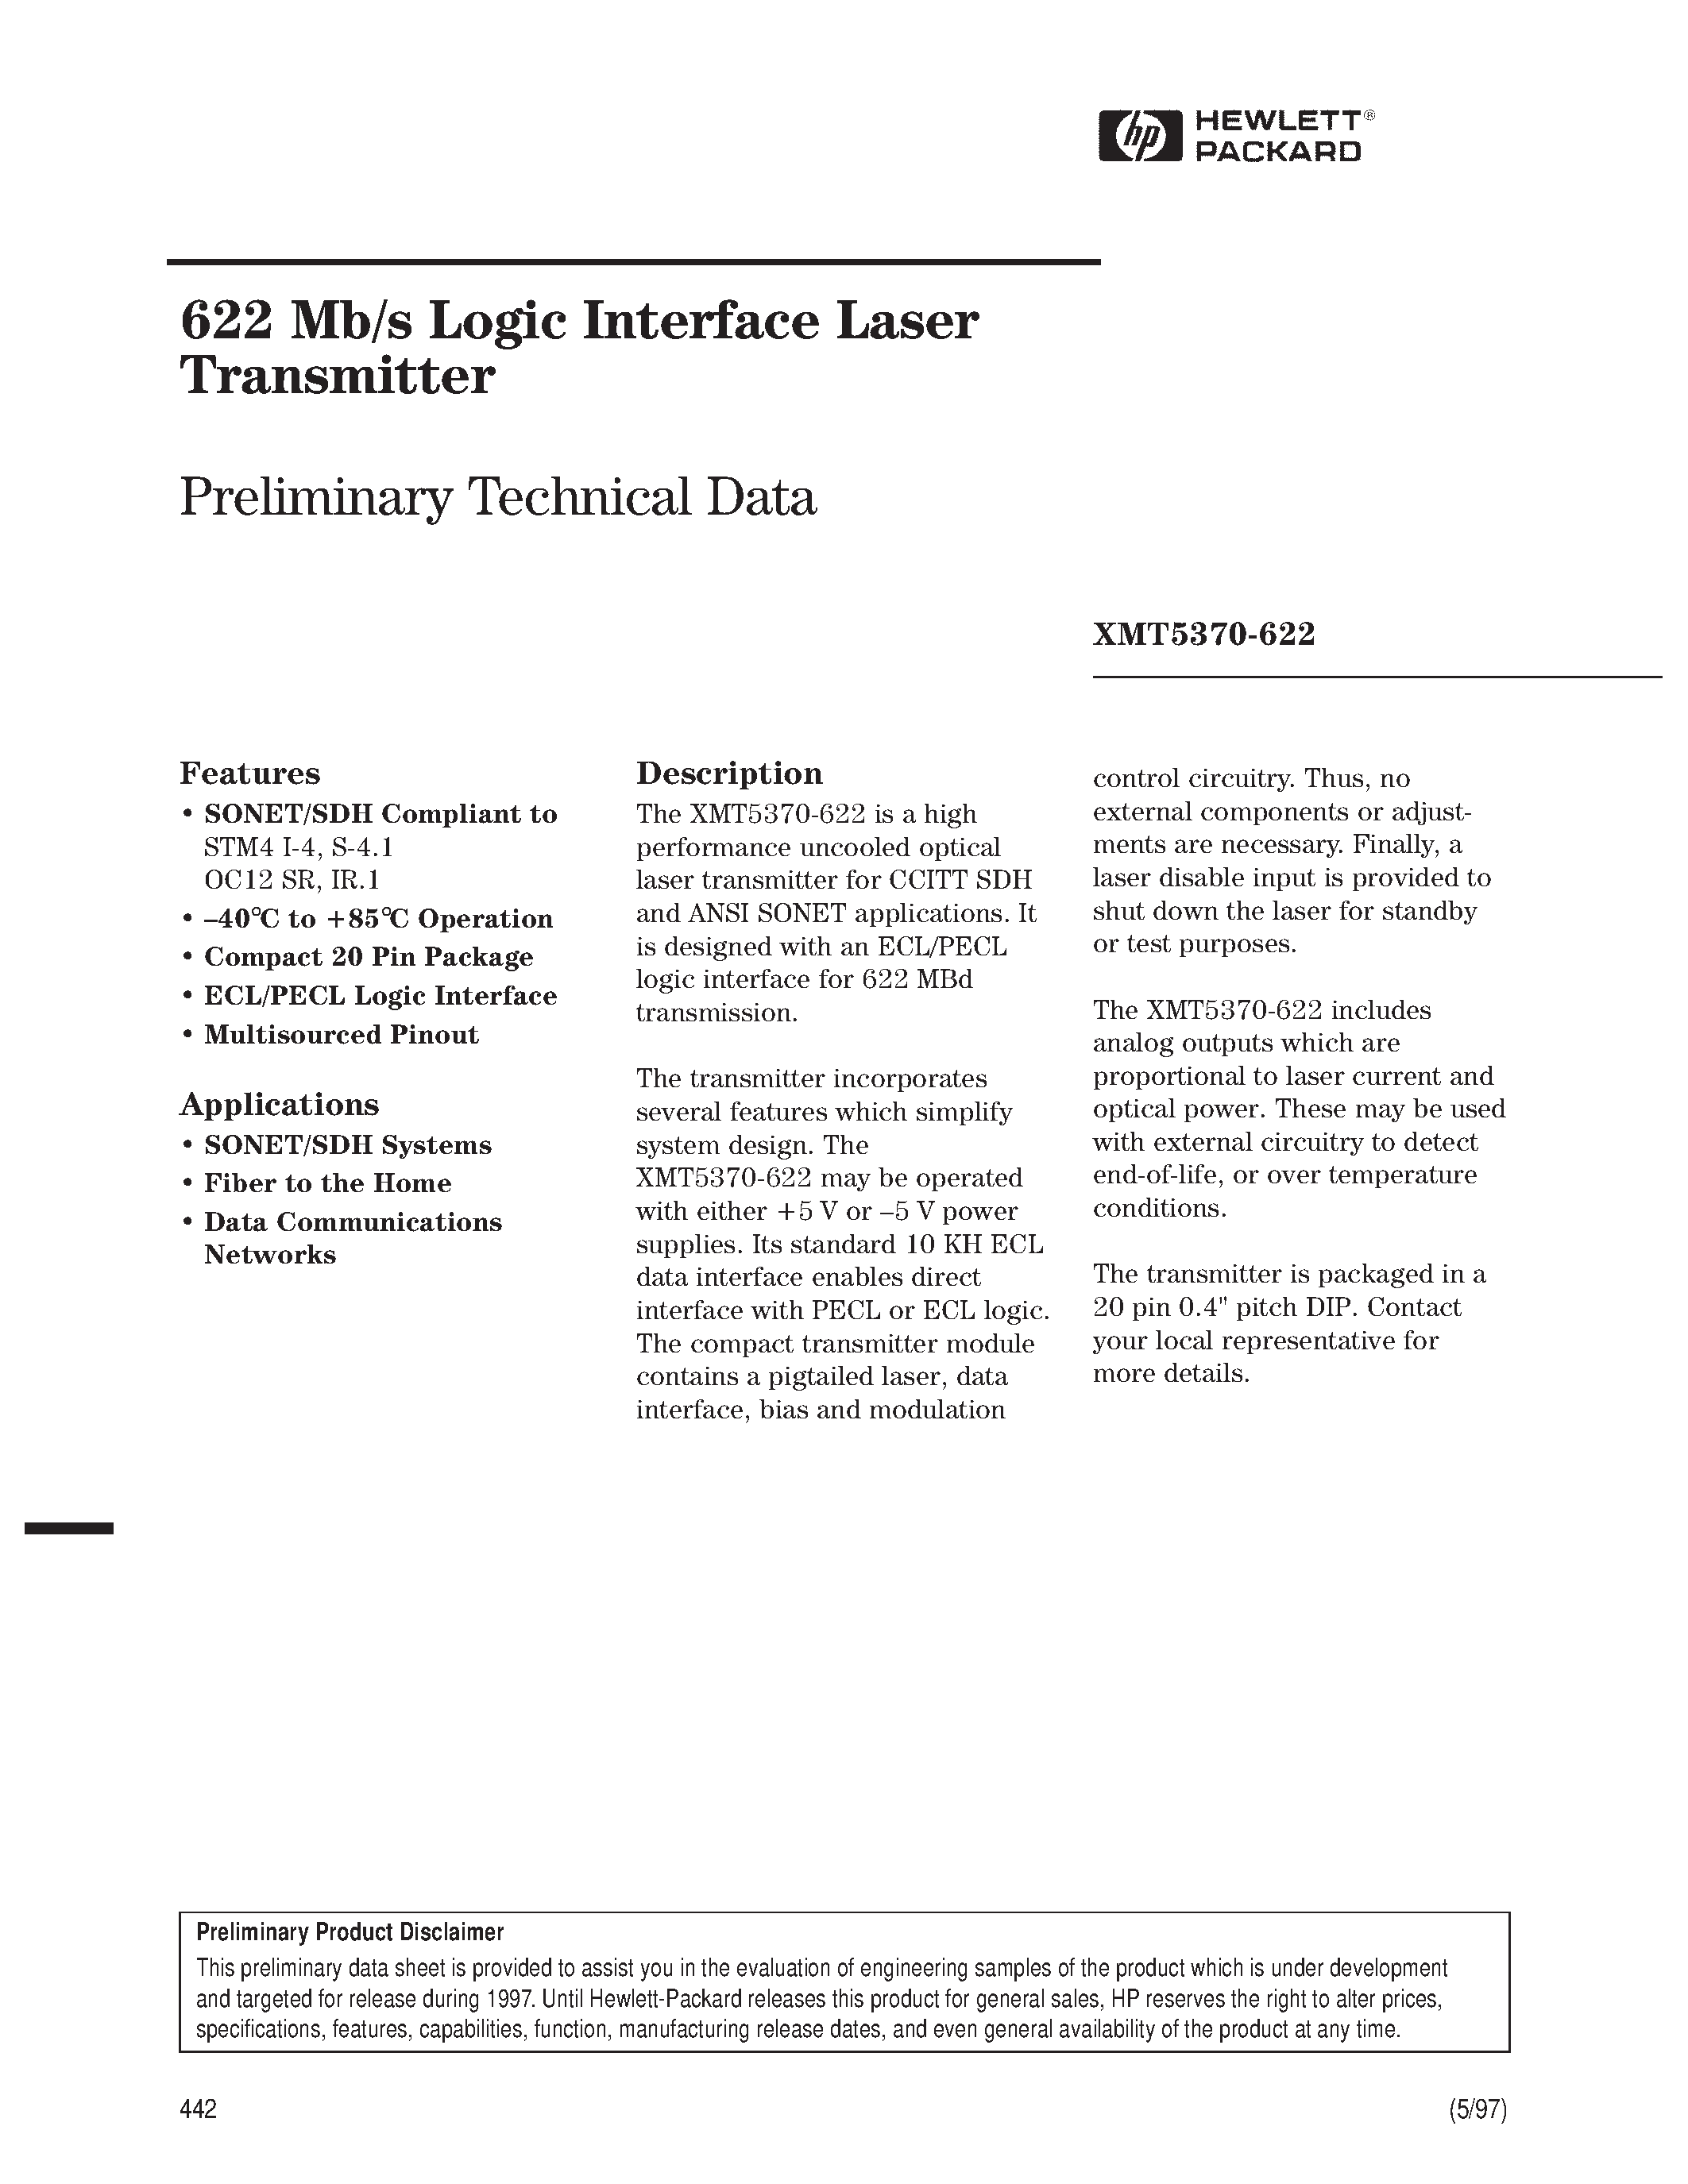 Datasheet XMT5160B-155-SC - 622 Mb/s Logic Interface Laser Transmitter page 1